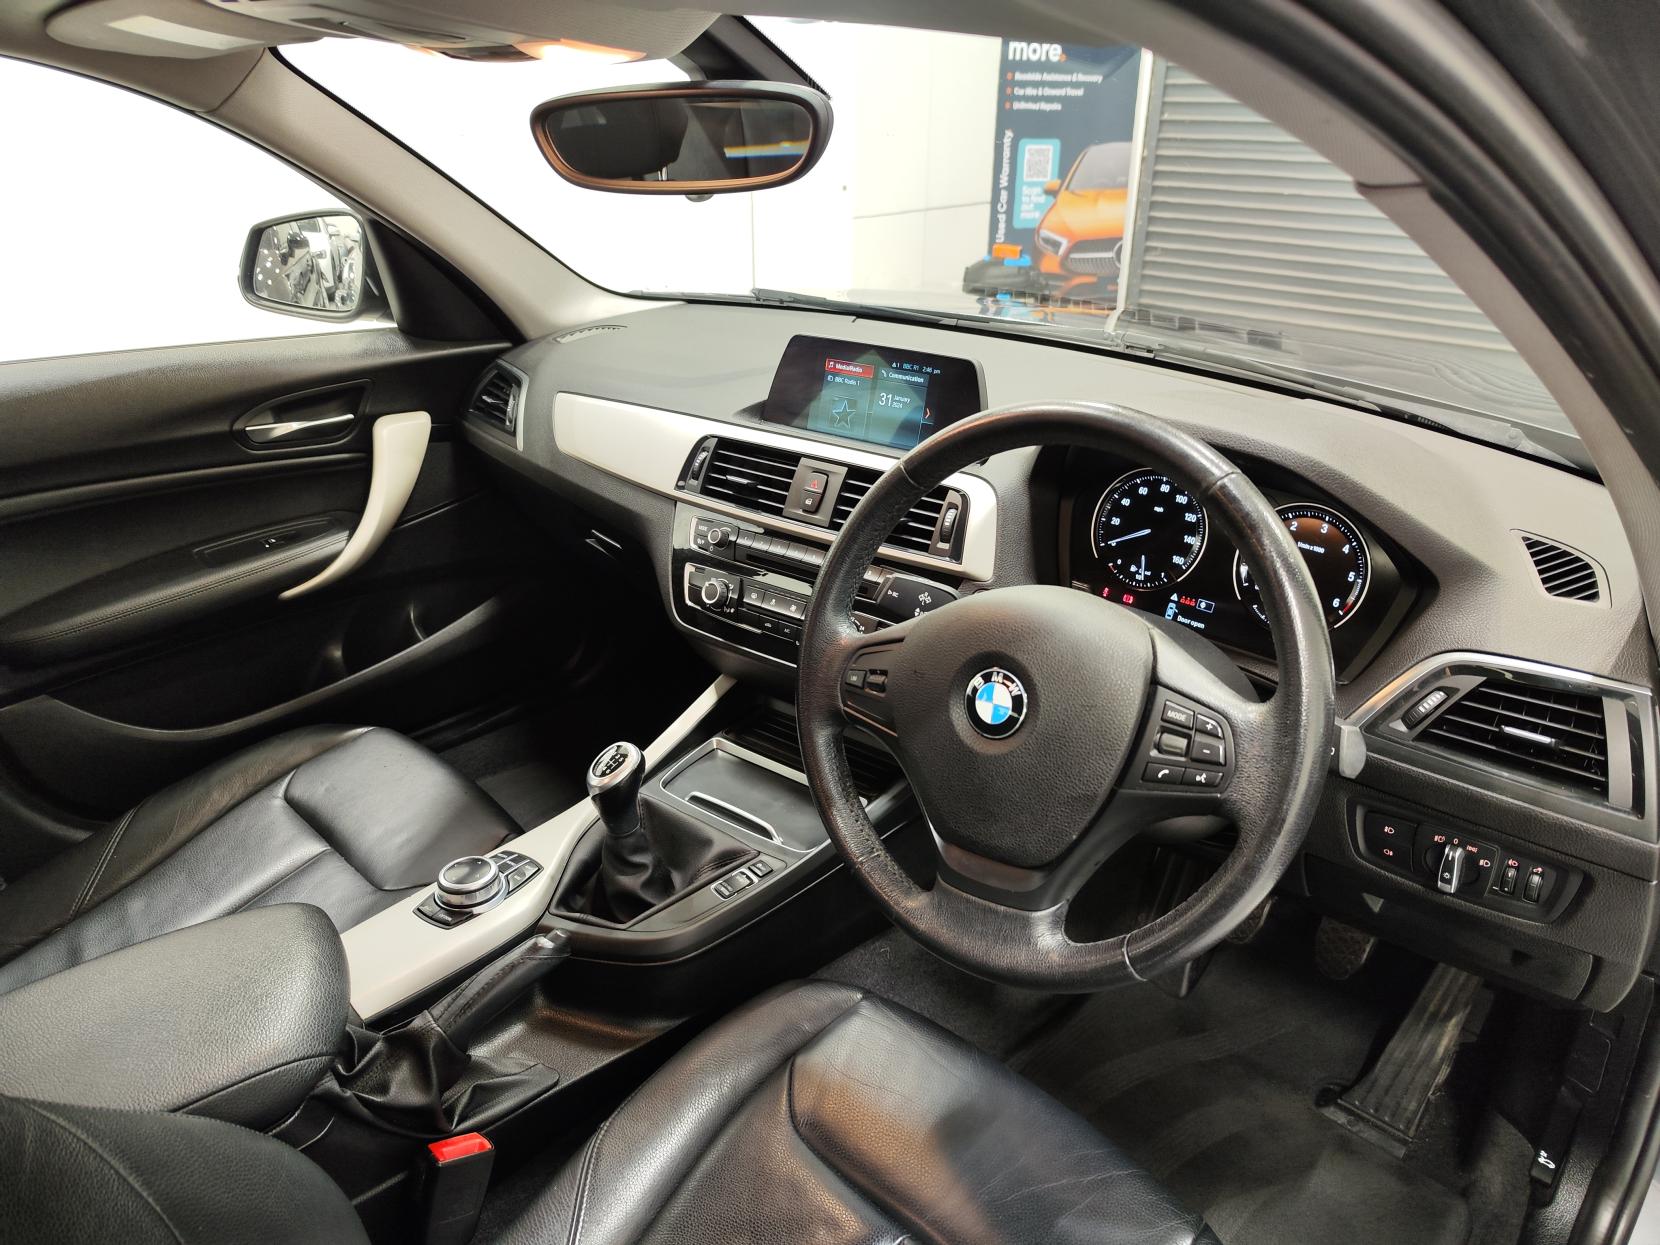 BMW 1 Series 2.0 118d SE Hatchback 5dr Diesel Manual Euro 6 (s/s) (150 ps)